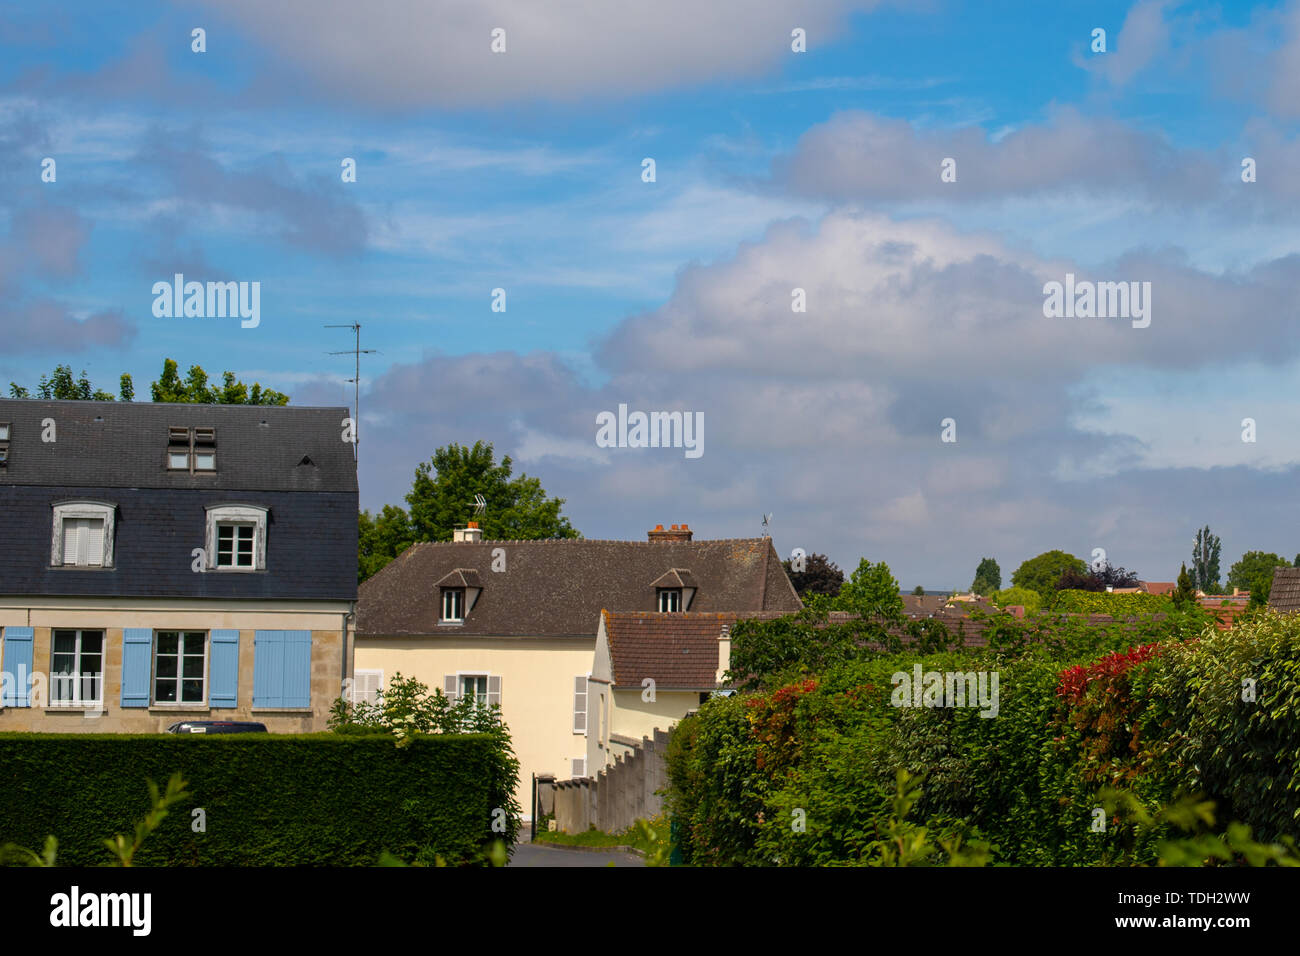 Blau wolkig und kontrastierenden Himmel über einem Europäischen Dorf. Französisch Land Häuser. Hedge-fonds und viel Grün die Gasse hinunter. Stockfoto